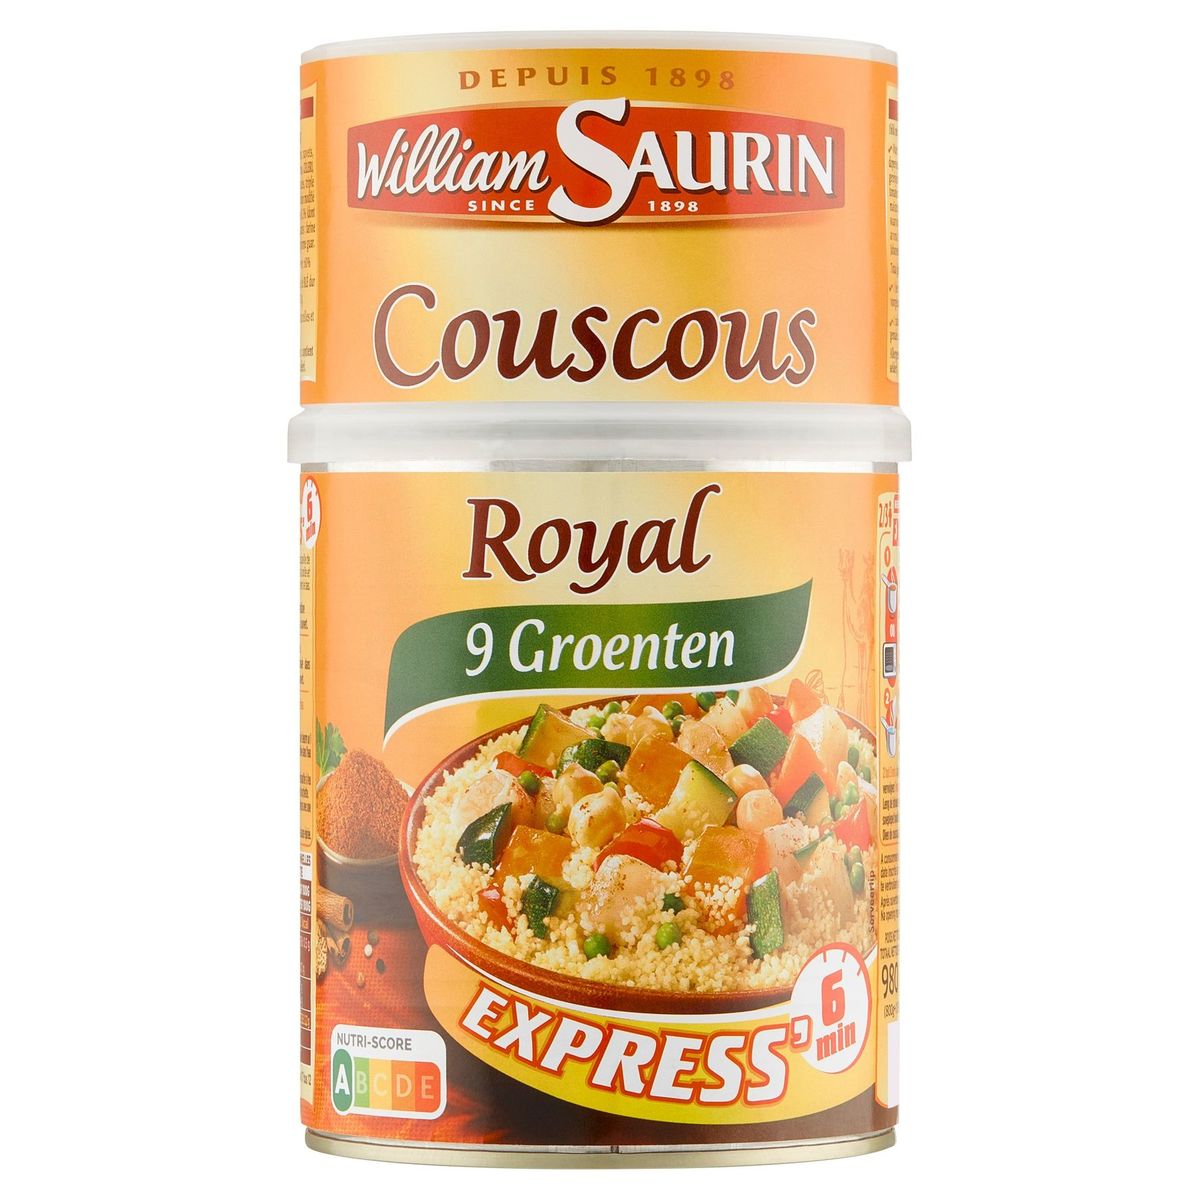 William Saurin Couscous Royal aux 9 Légumes 980 g